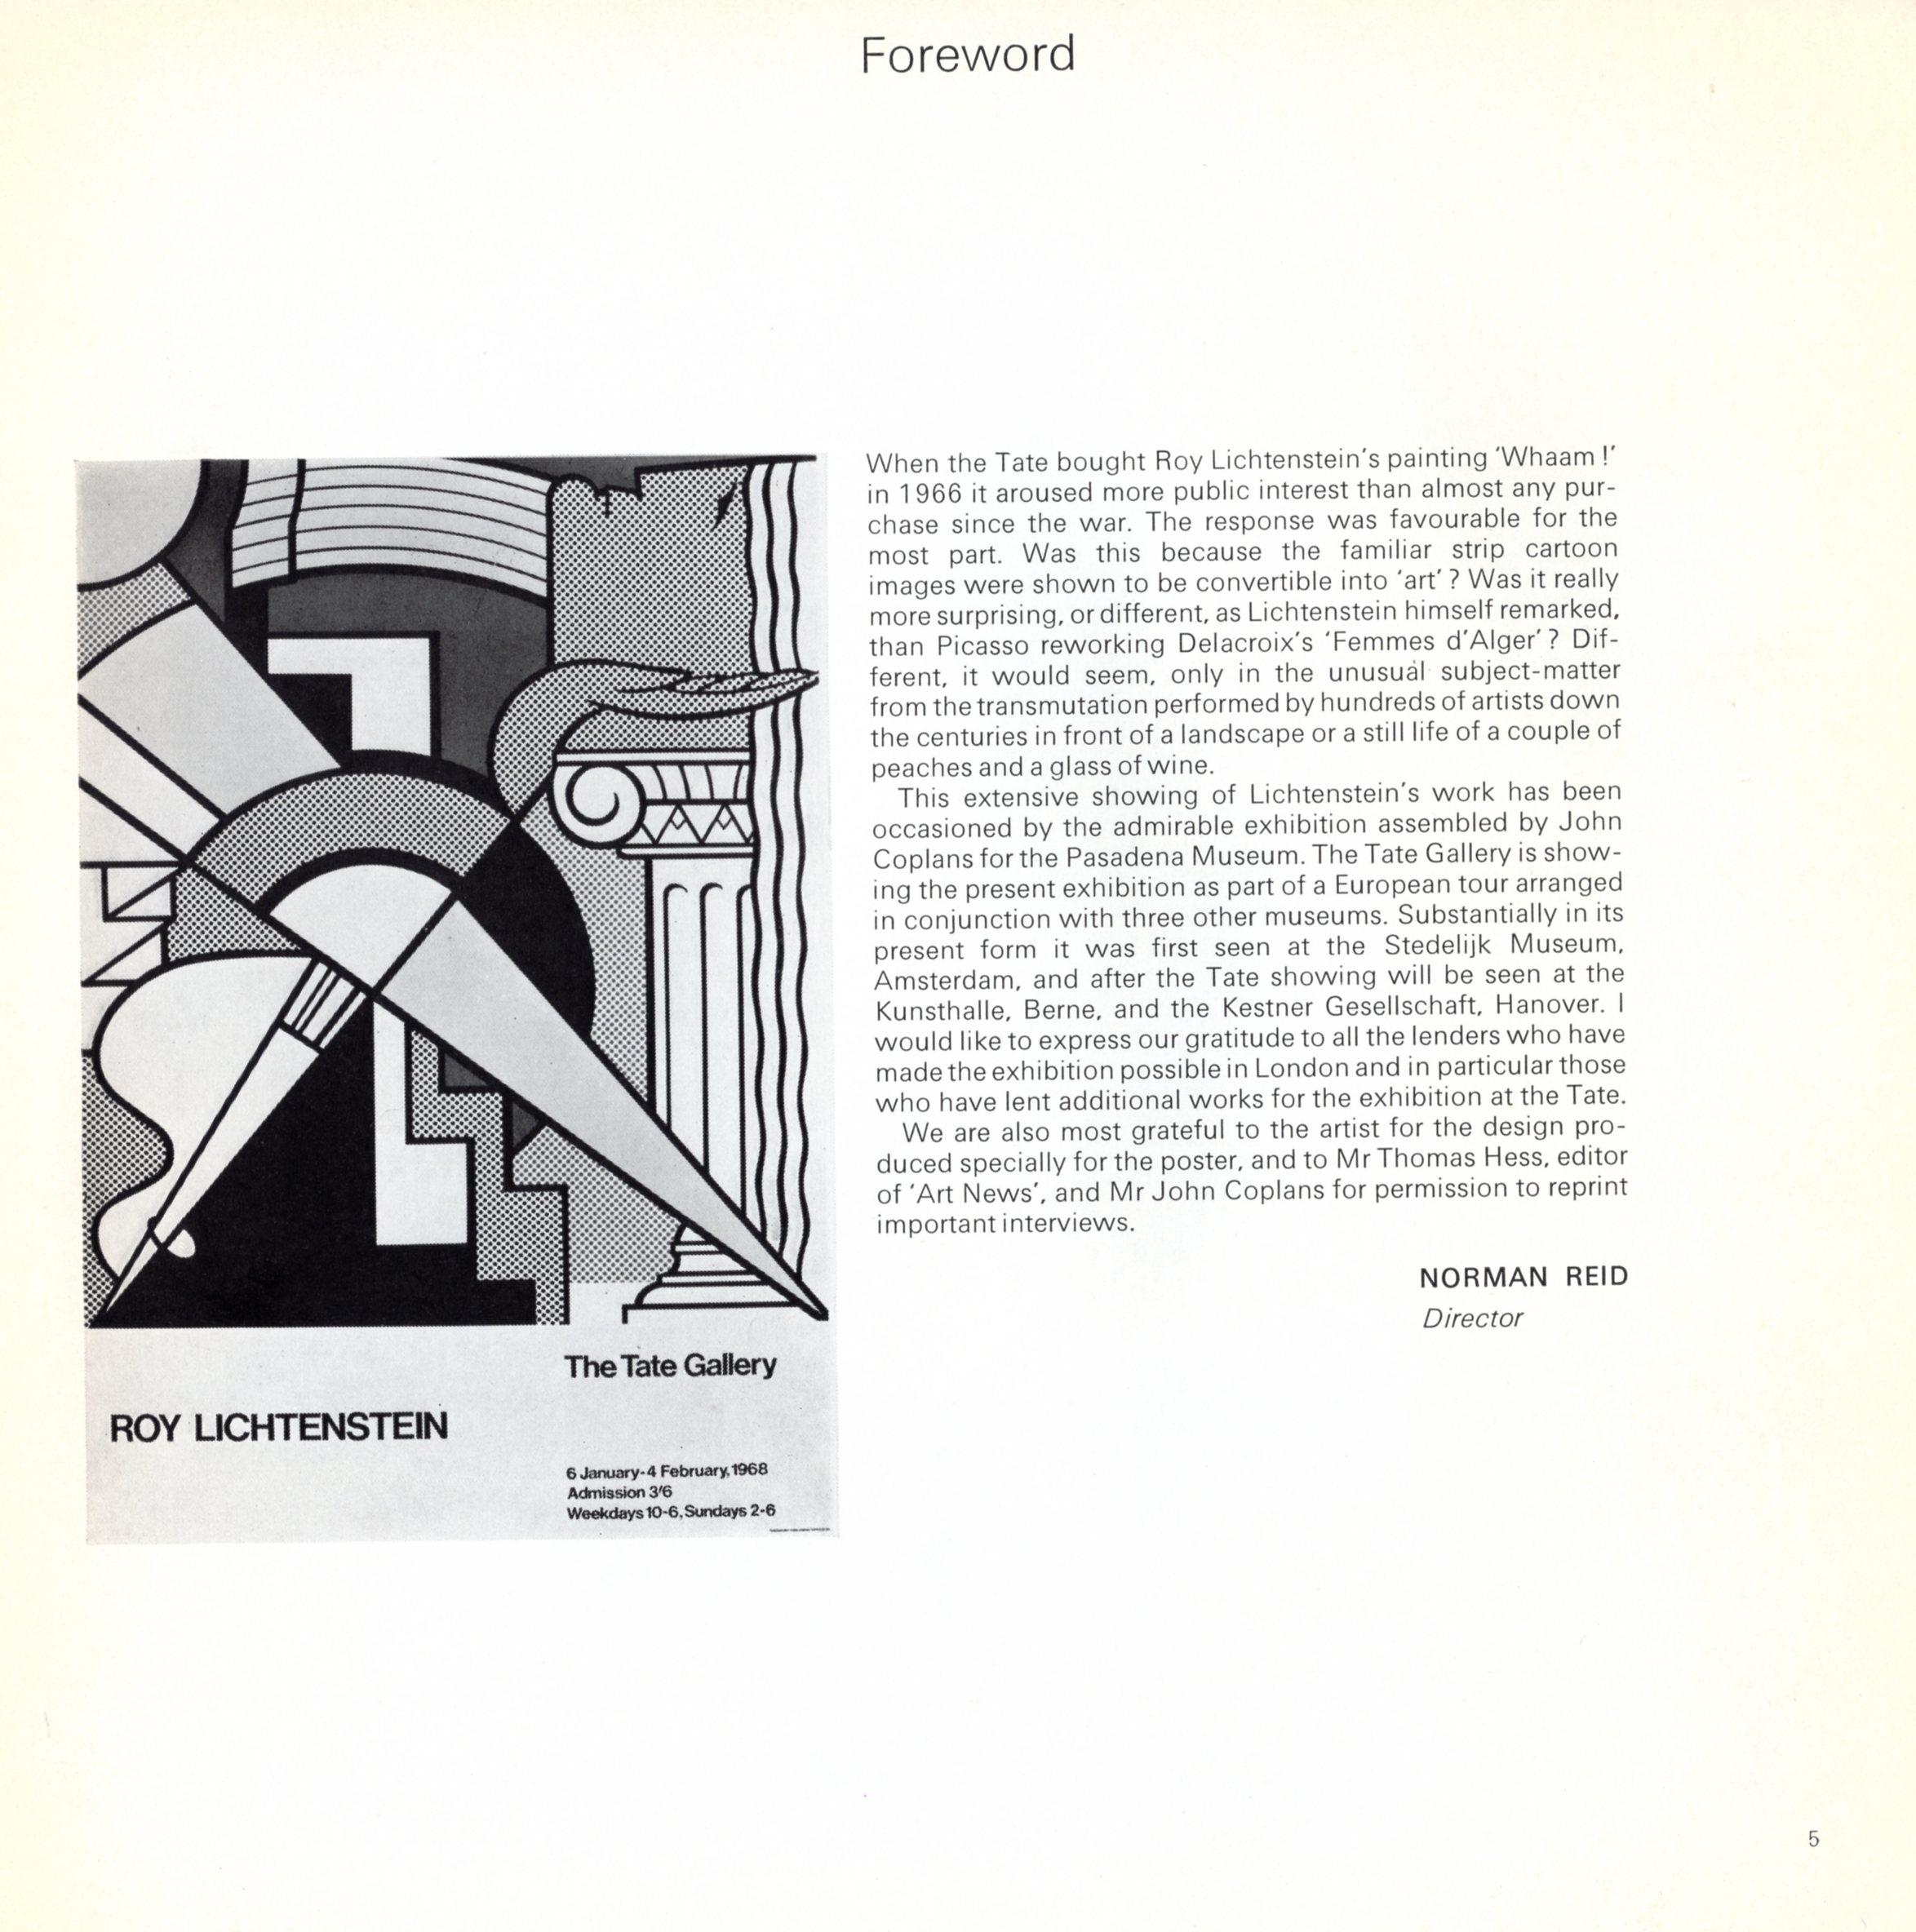 Roy Lichtenstein at The Tate Gallery 1968 'Exhibition Catalog' 1